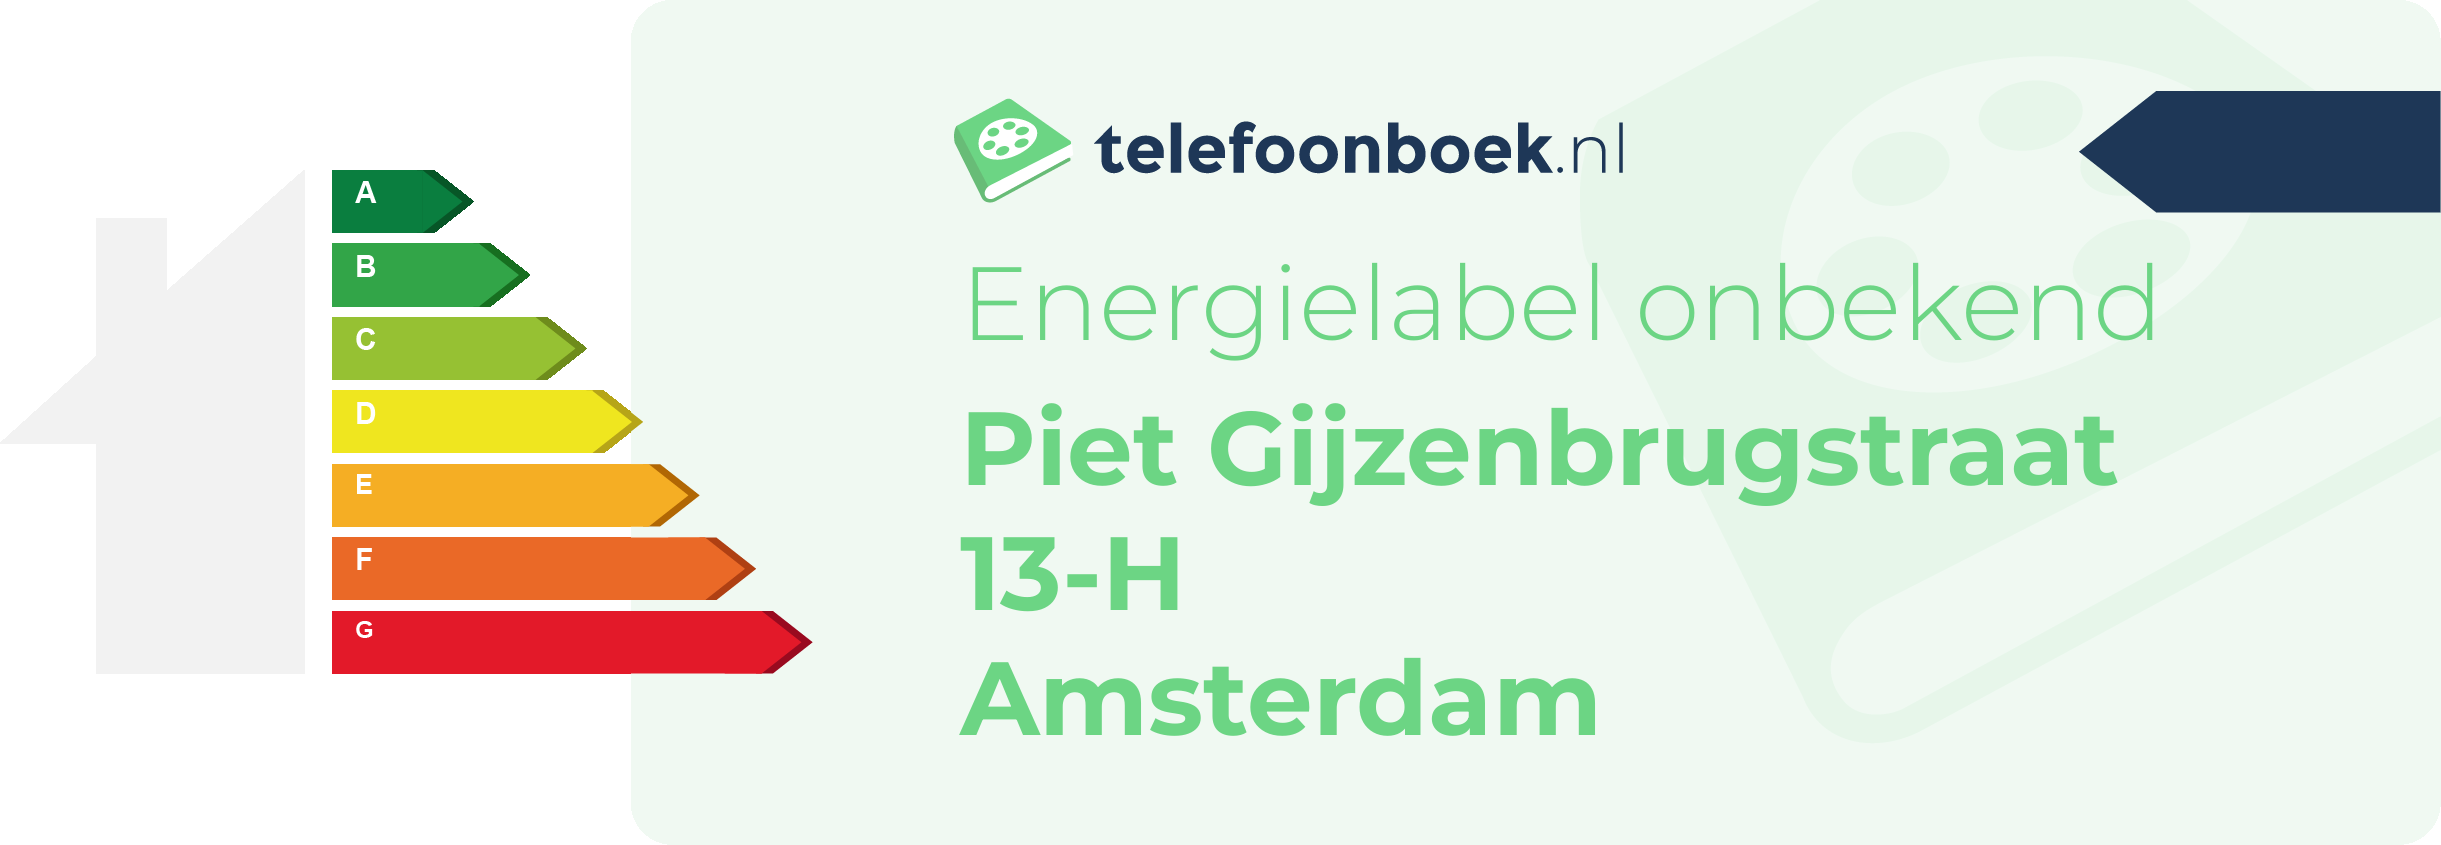 Energielabel Piet Gijzenbrugstraat 13-H Amsterdam